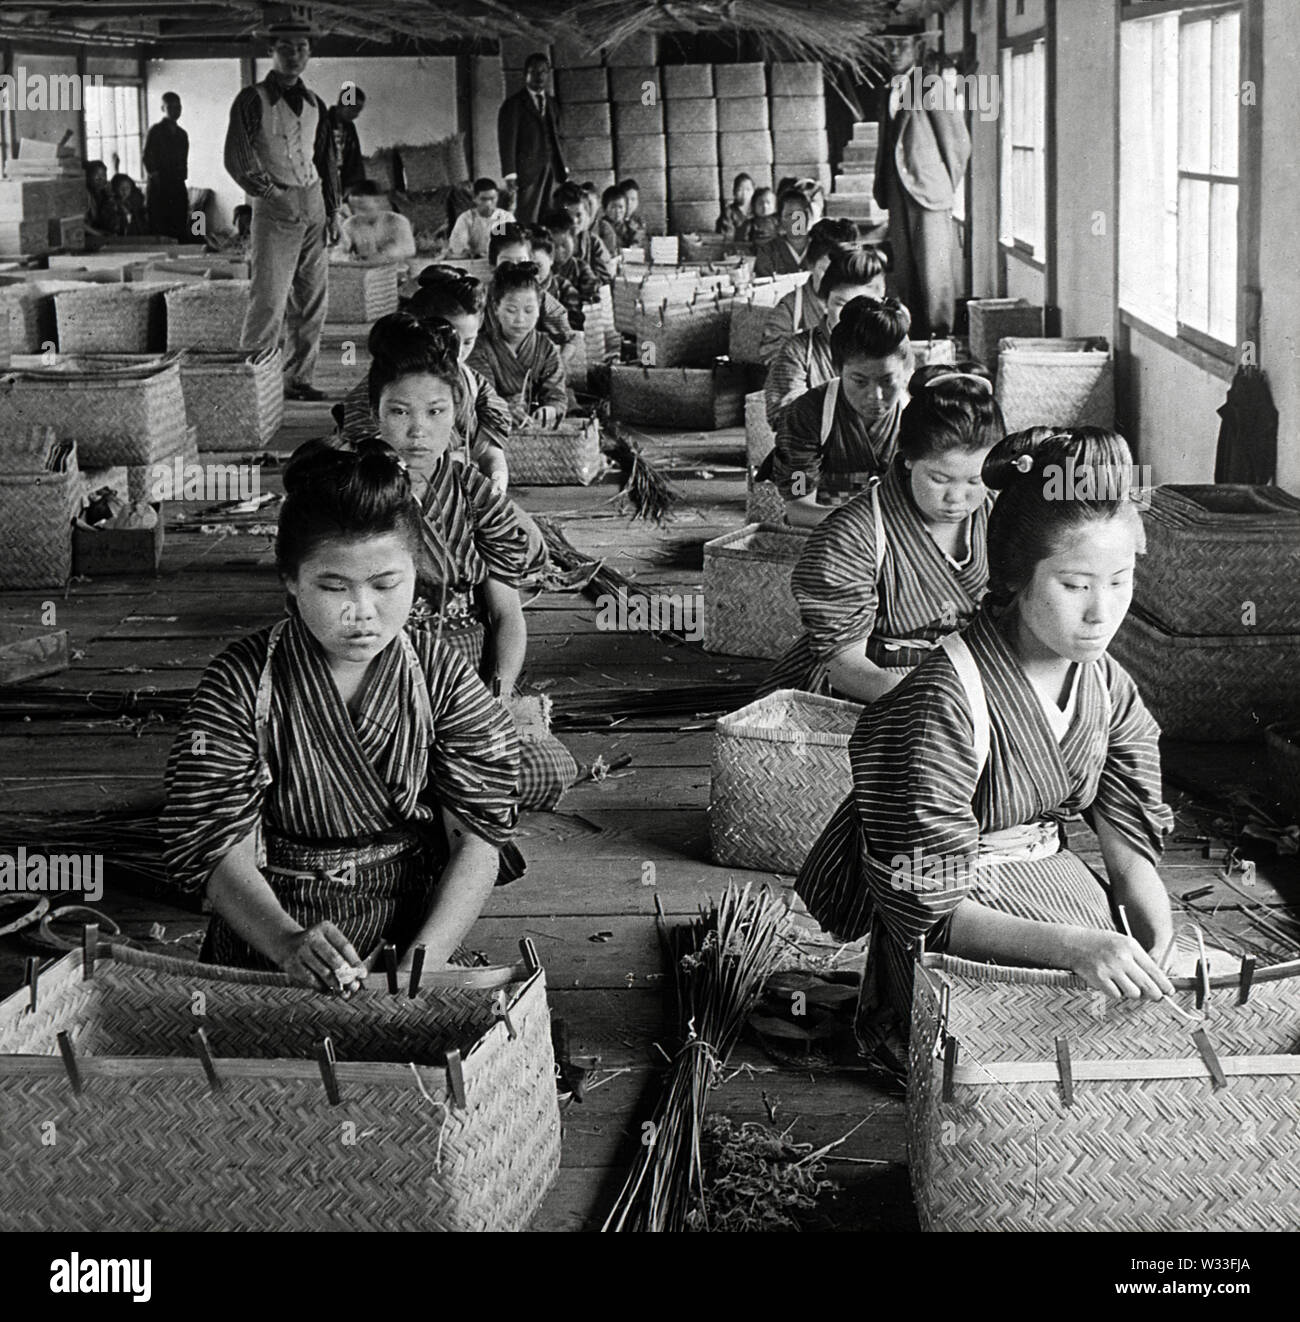 [1900s Japan - Japanische Frauen an der Arbeit an Bambus Warenkorb Factory] - Junge Mädchen und Frauen bei der Arbeit an einem Bambus Warenkorb Fabrik in 1904. 20. Jahrhundert vintage Glas schieben. Stockfoto